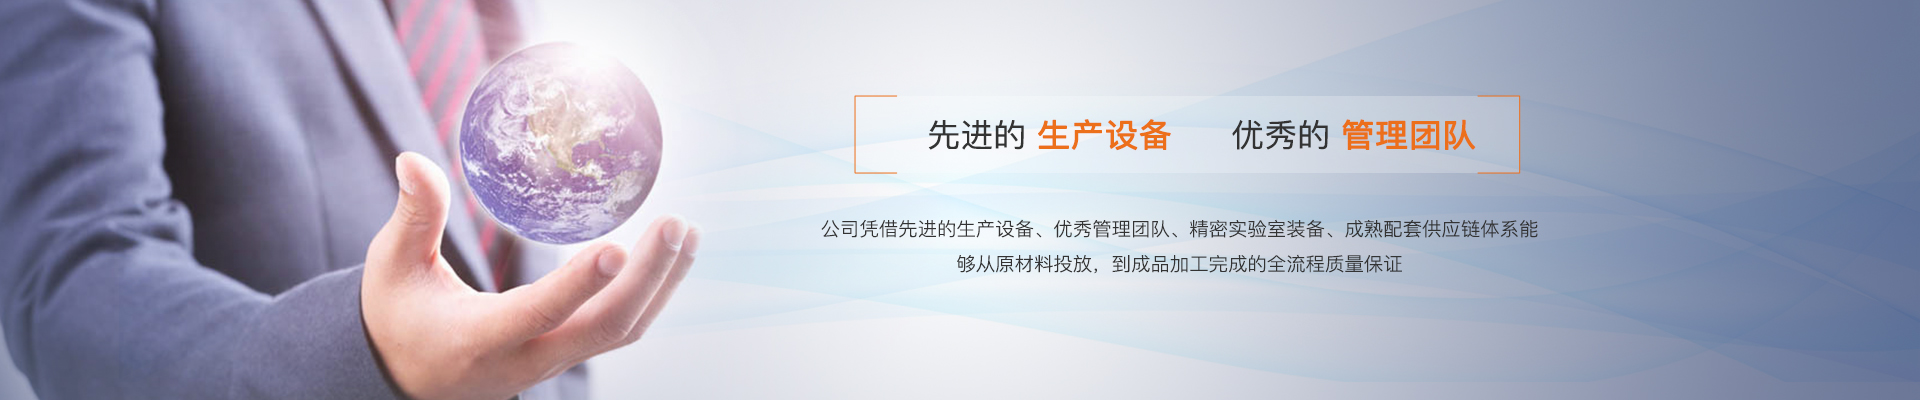 广州海纳新能源汽车部件有限公司